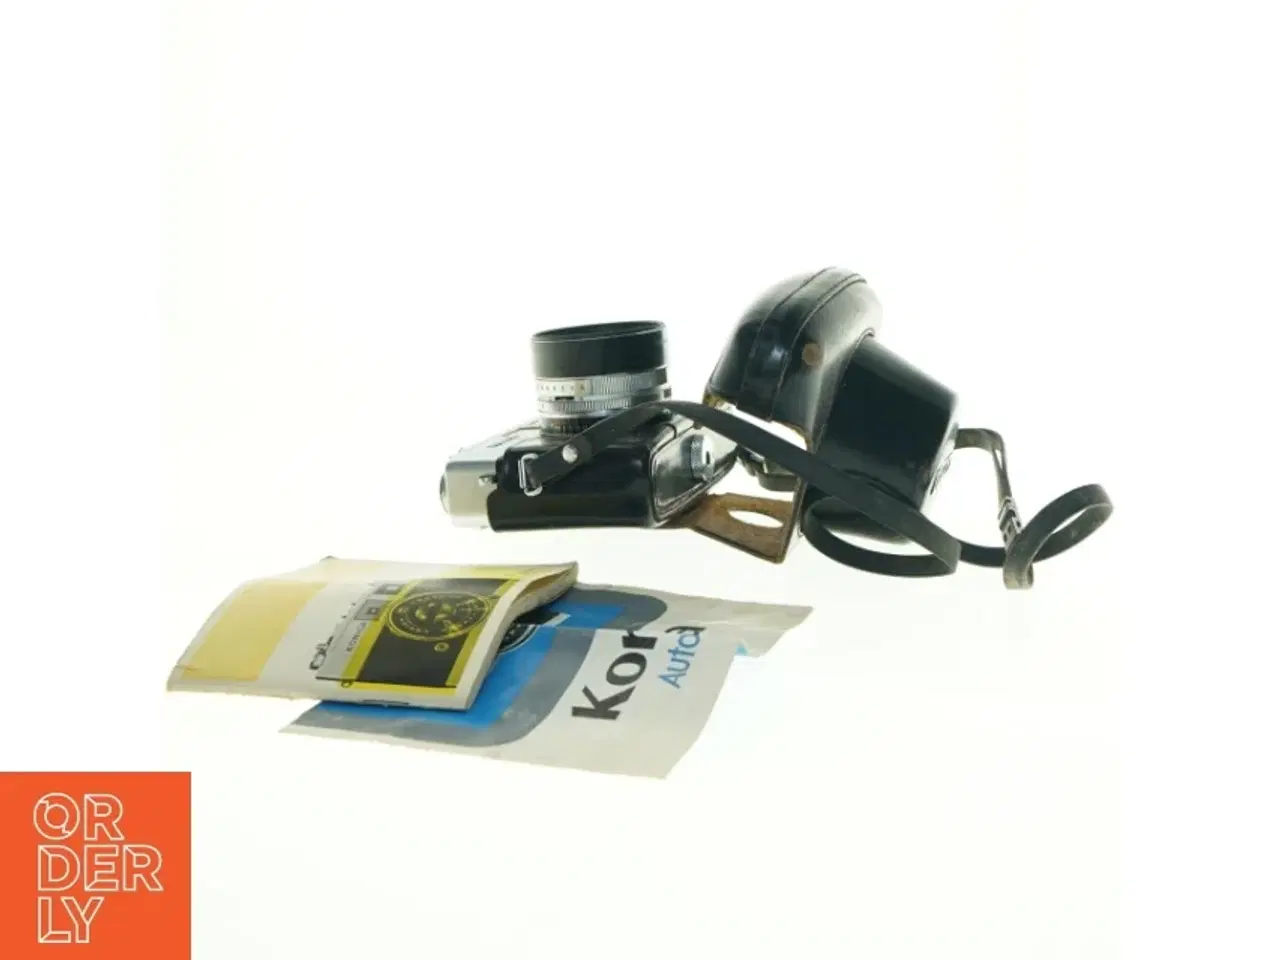 Billede 4 - Konica Auto S2 kamera med etui og manual fra Konica (str. 17 x 14 cm)